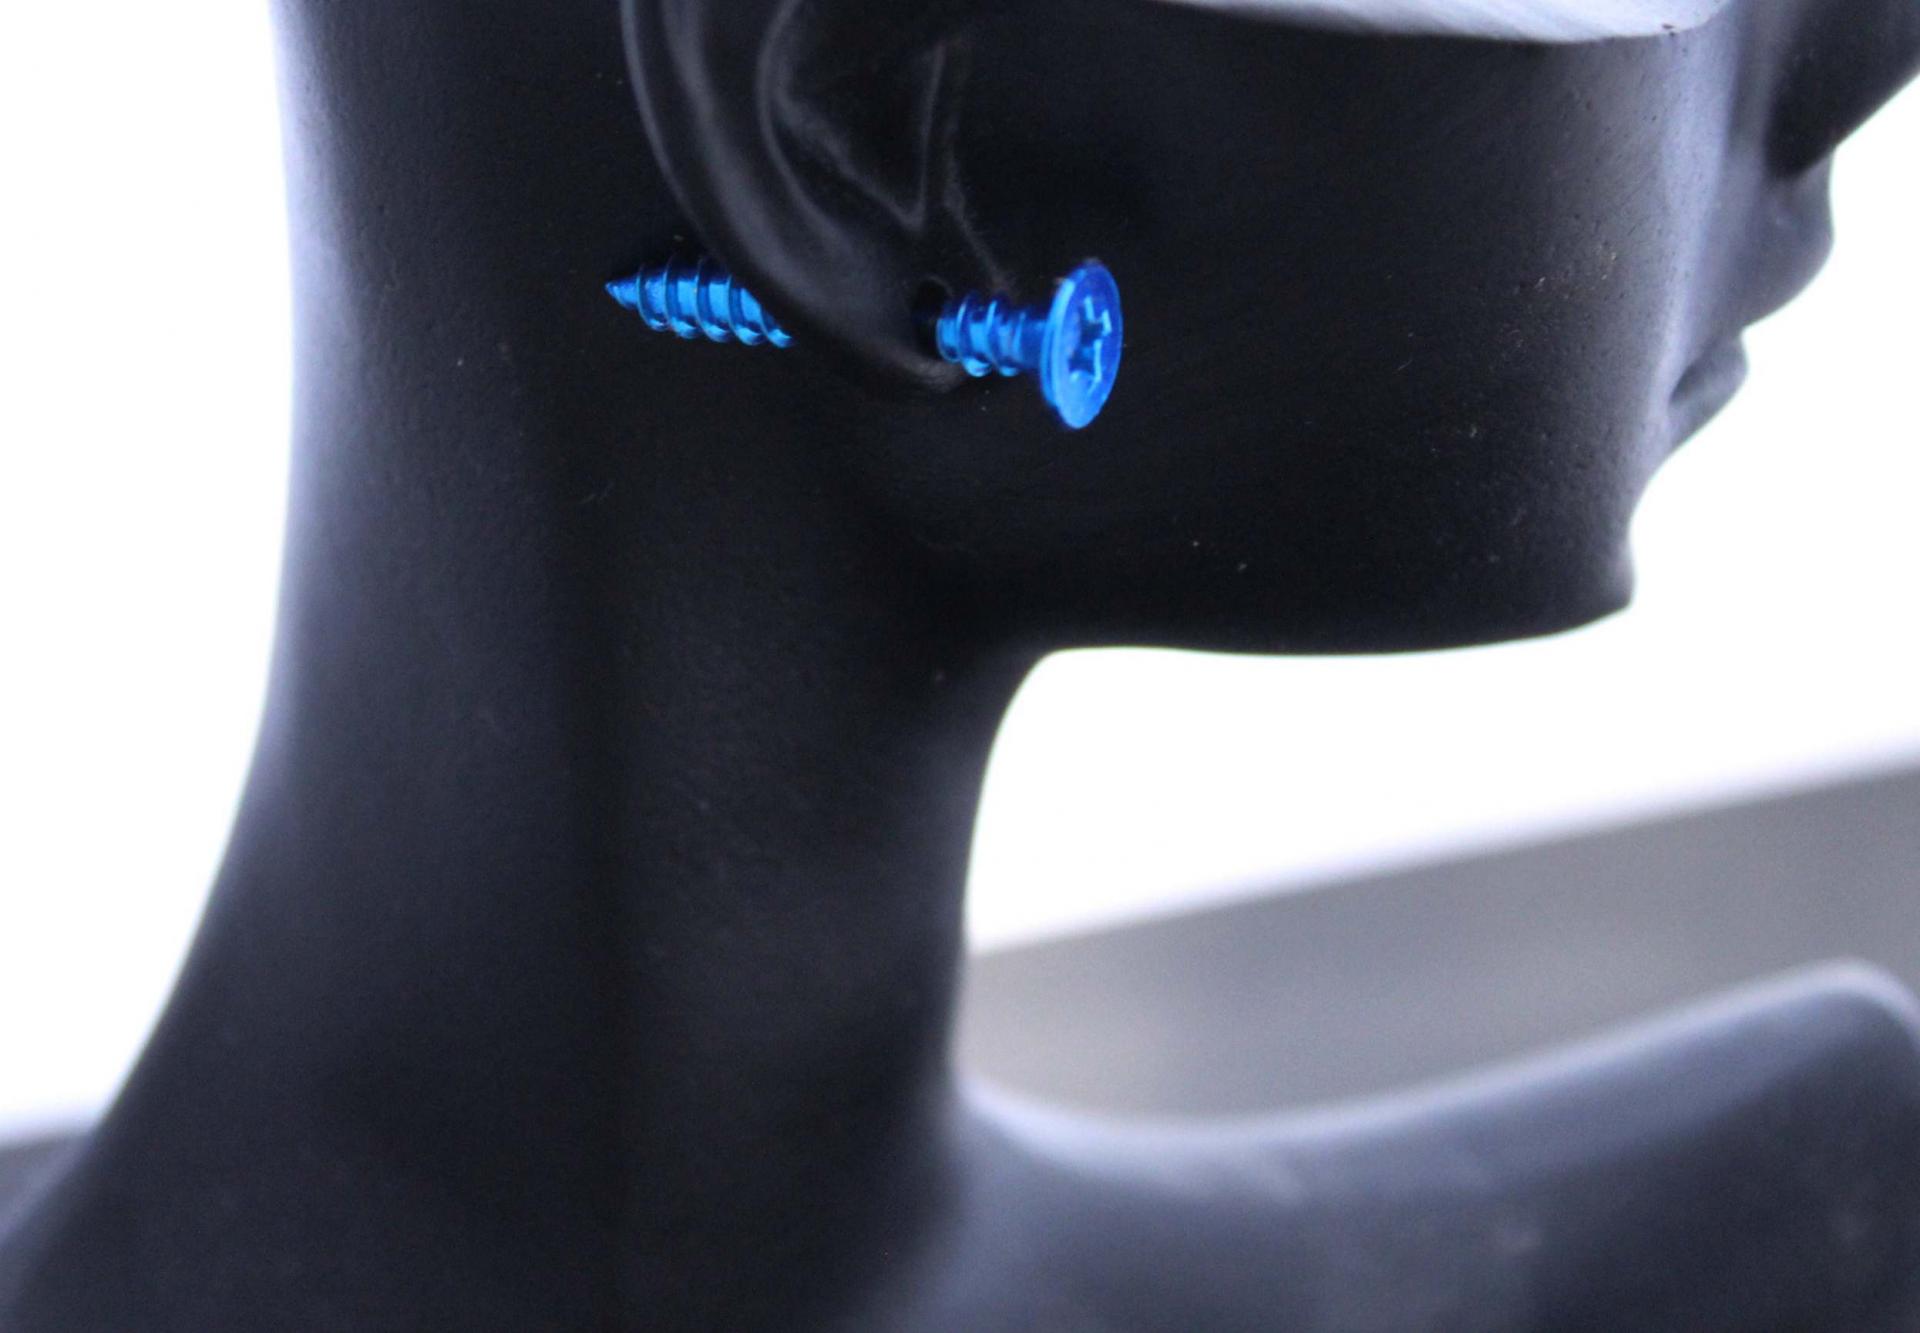 Blue Screw Nail Effect Earrings - Body Piercing Jewellery